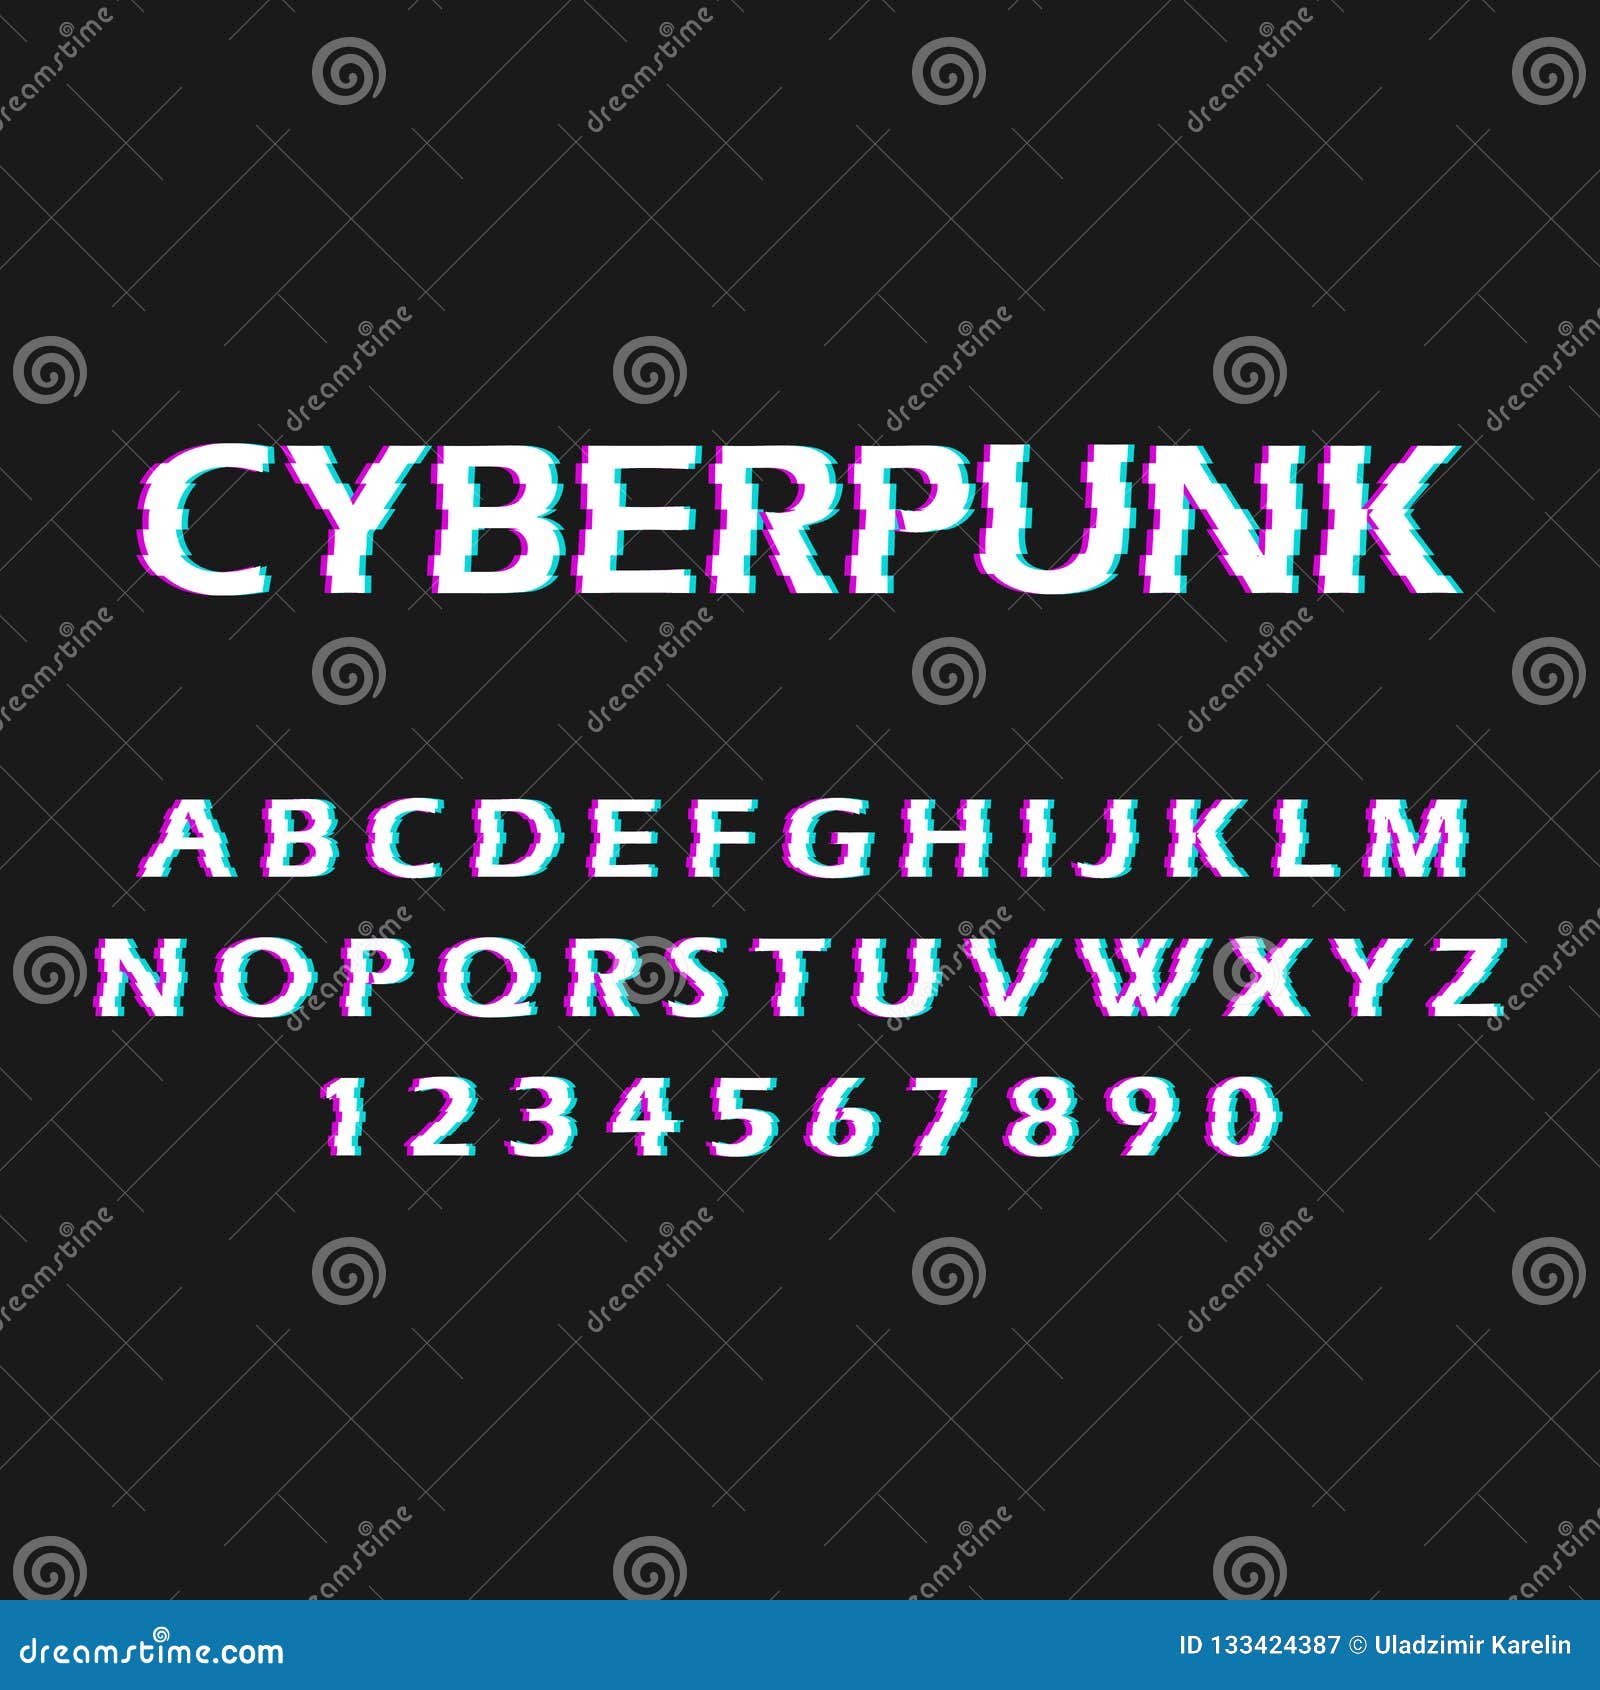 Cyberpunk free font фото 80